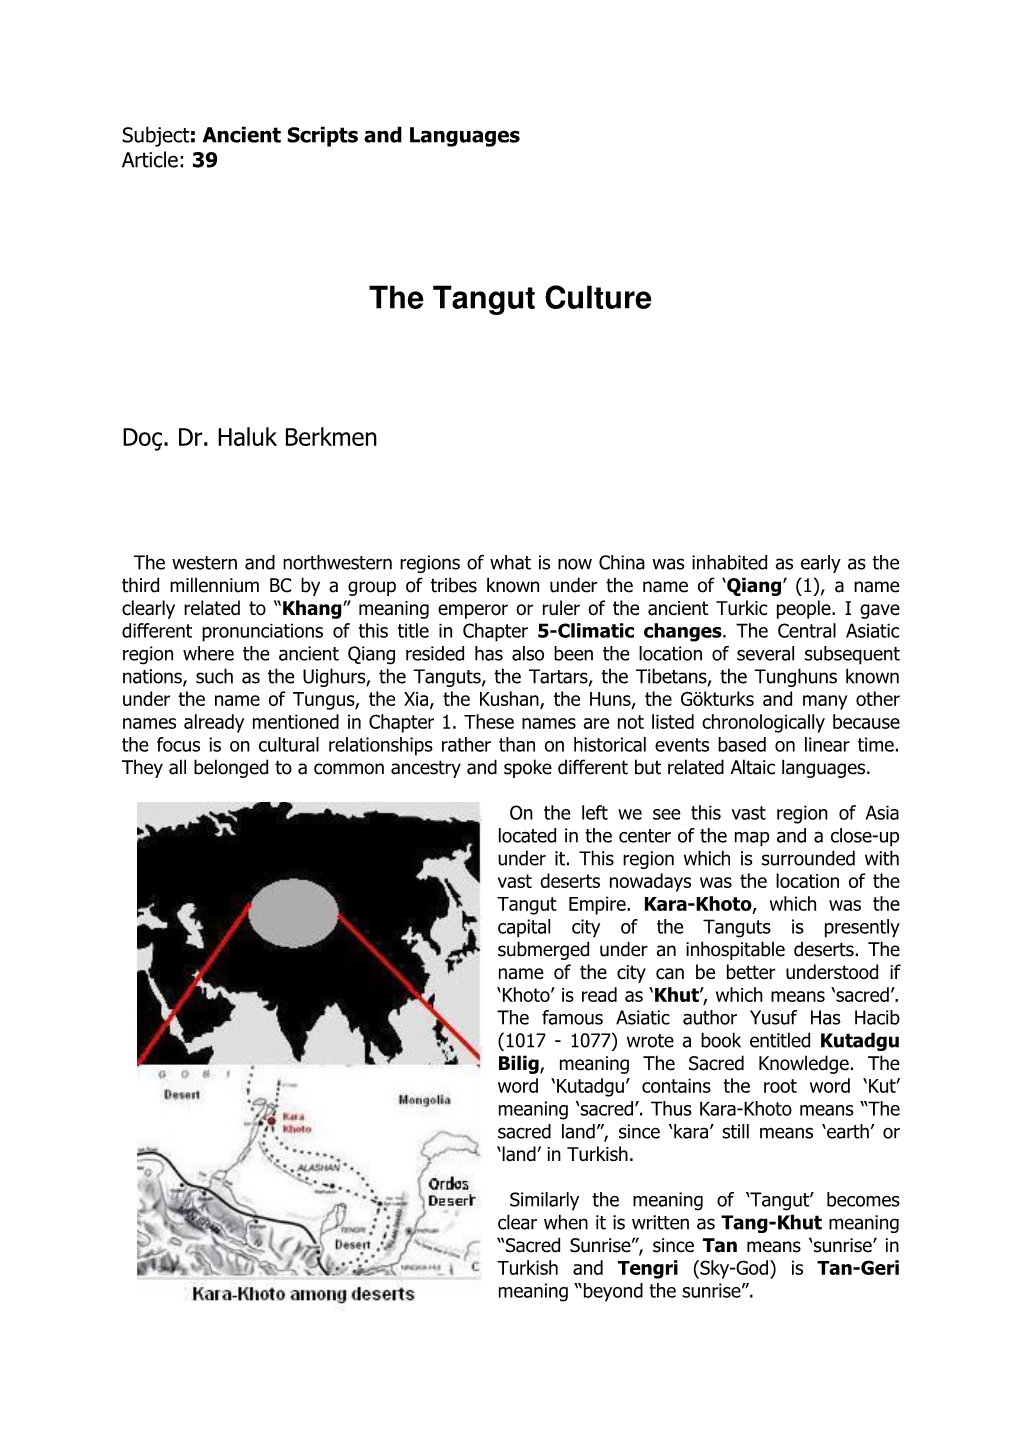 The Tangut Culture